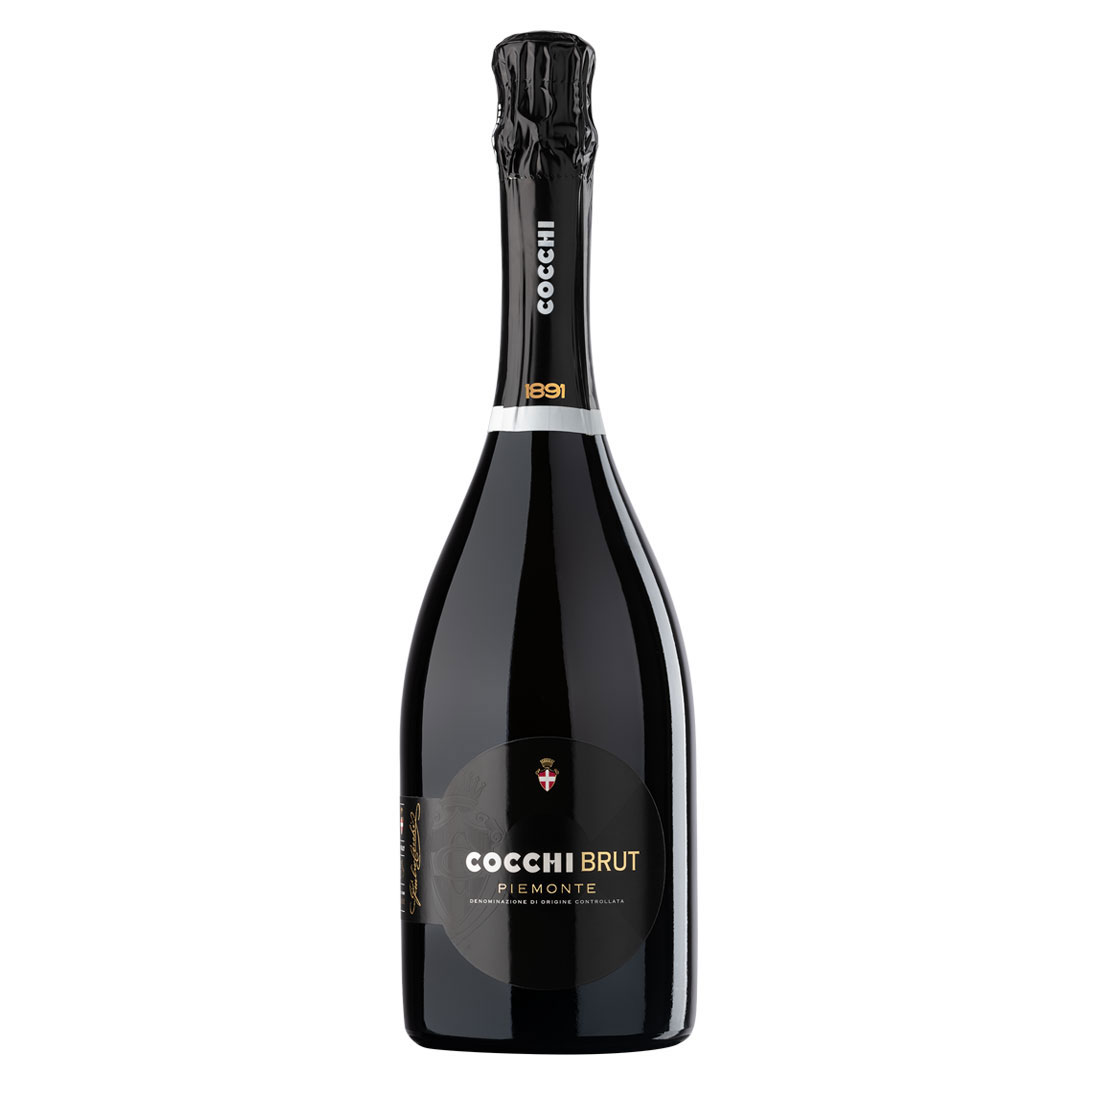 LB_Bottle-Cocchi-Sparkling-Brut-Piemonte-DOC